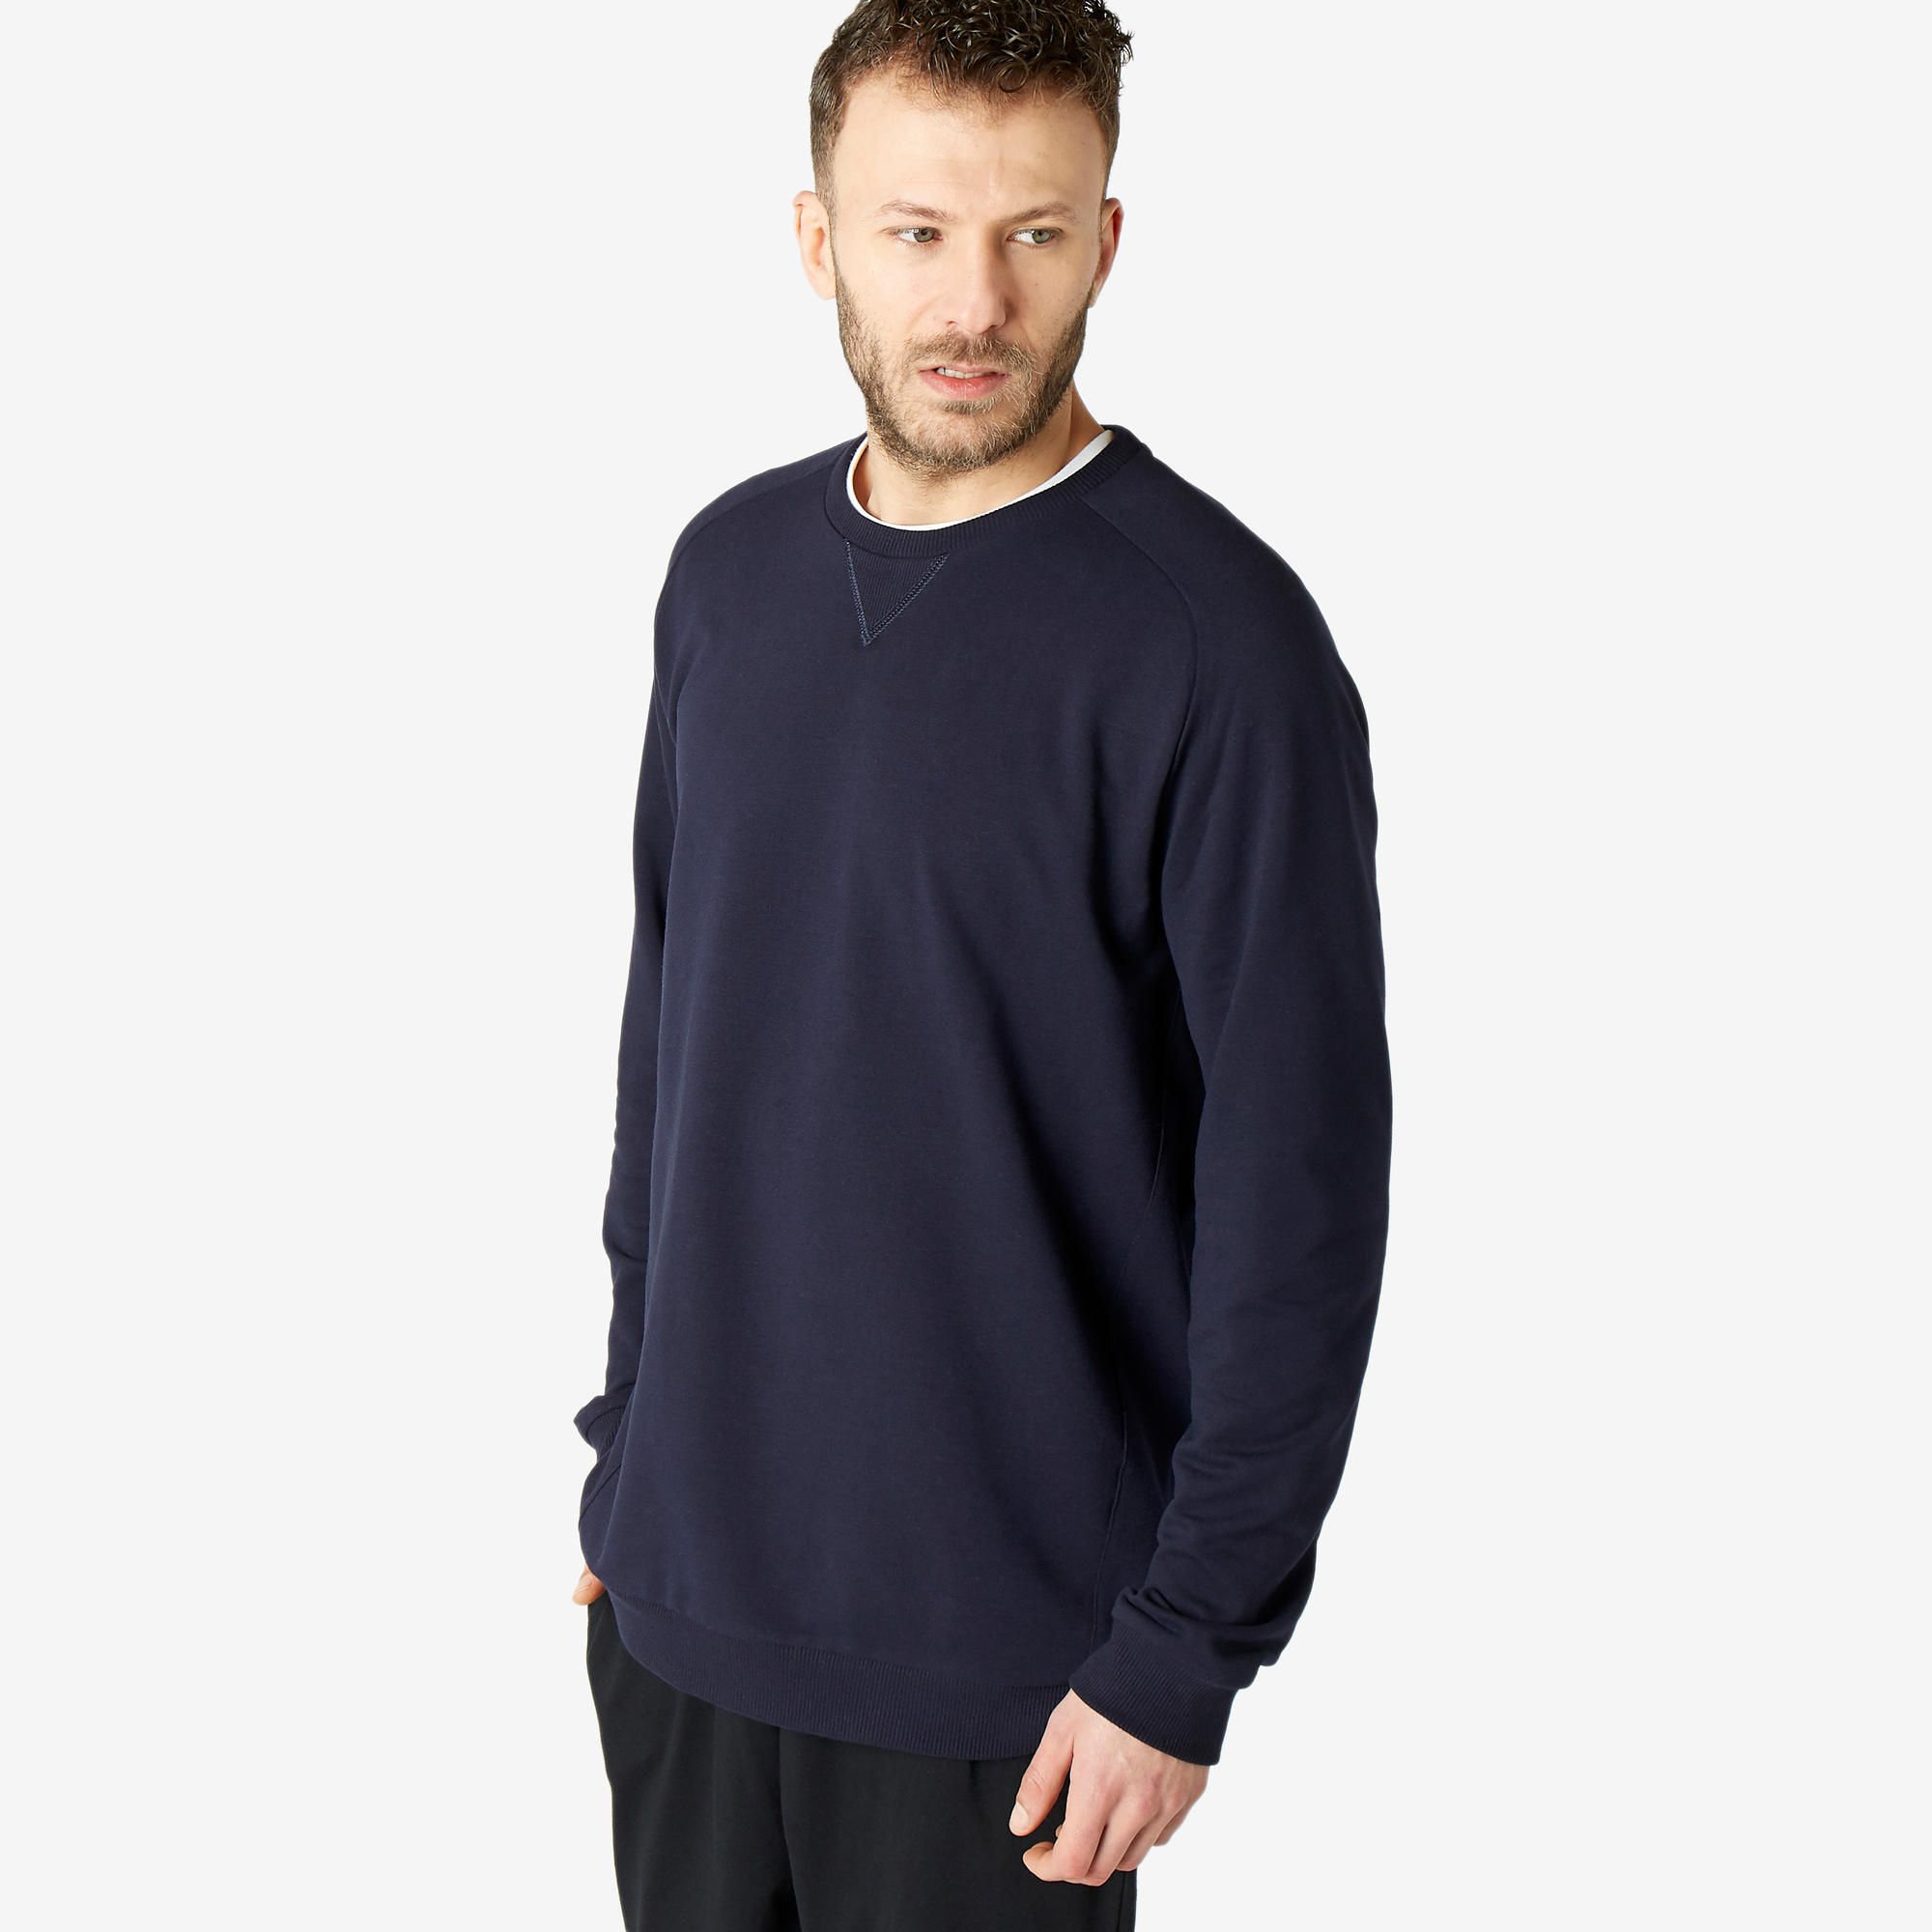 Men's Sweatshirt 120 - Navy Blue 